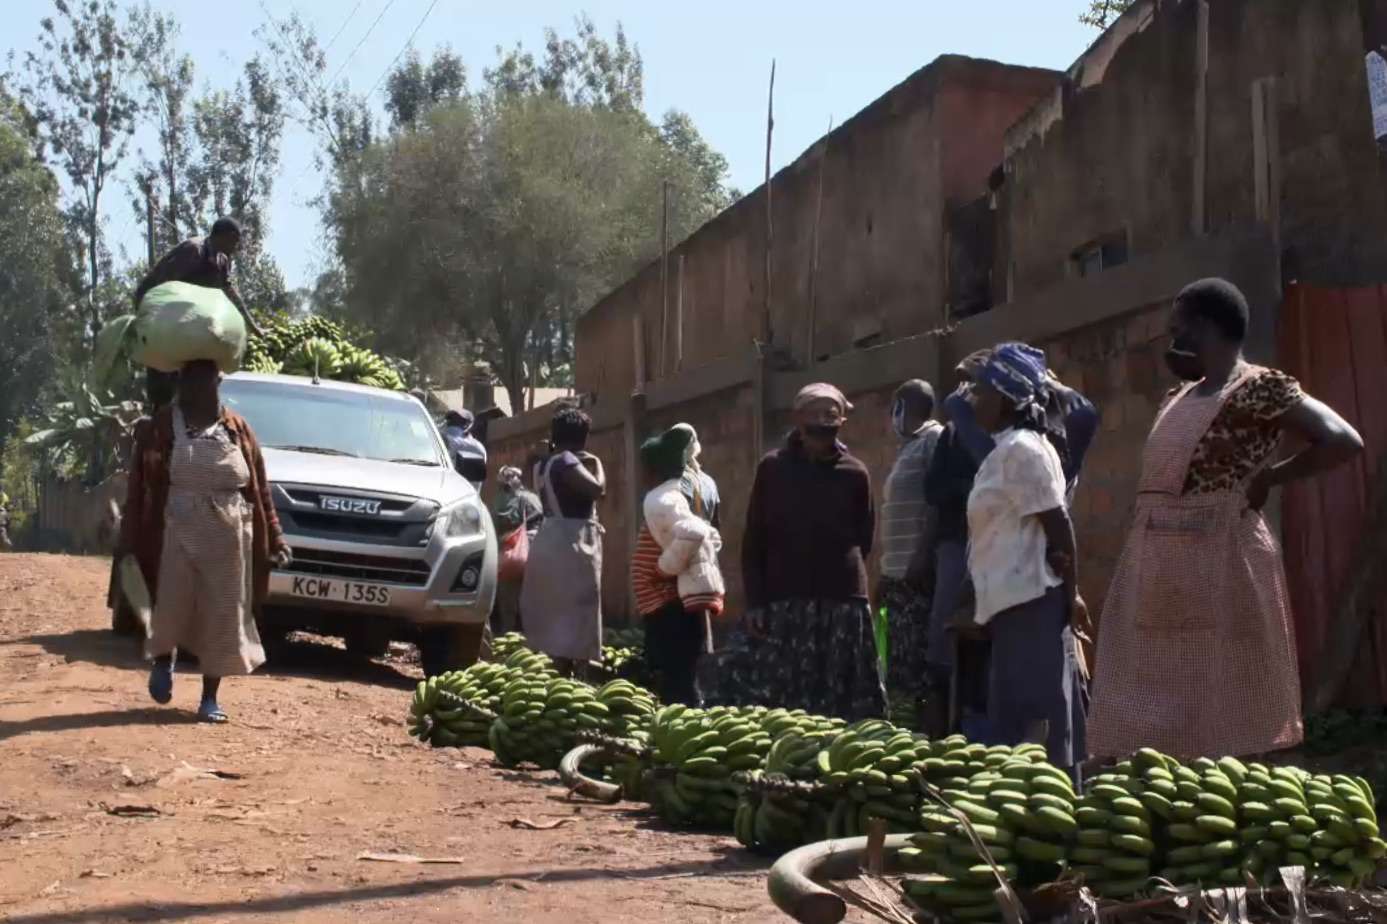 肯尼亚香蕉市场“width=